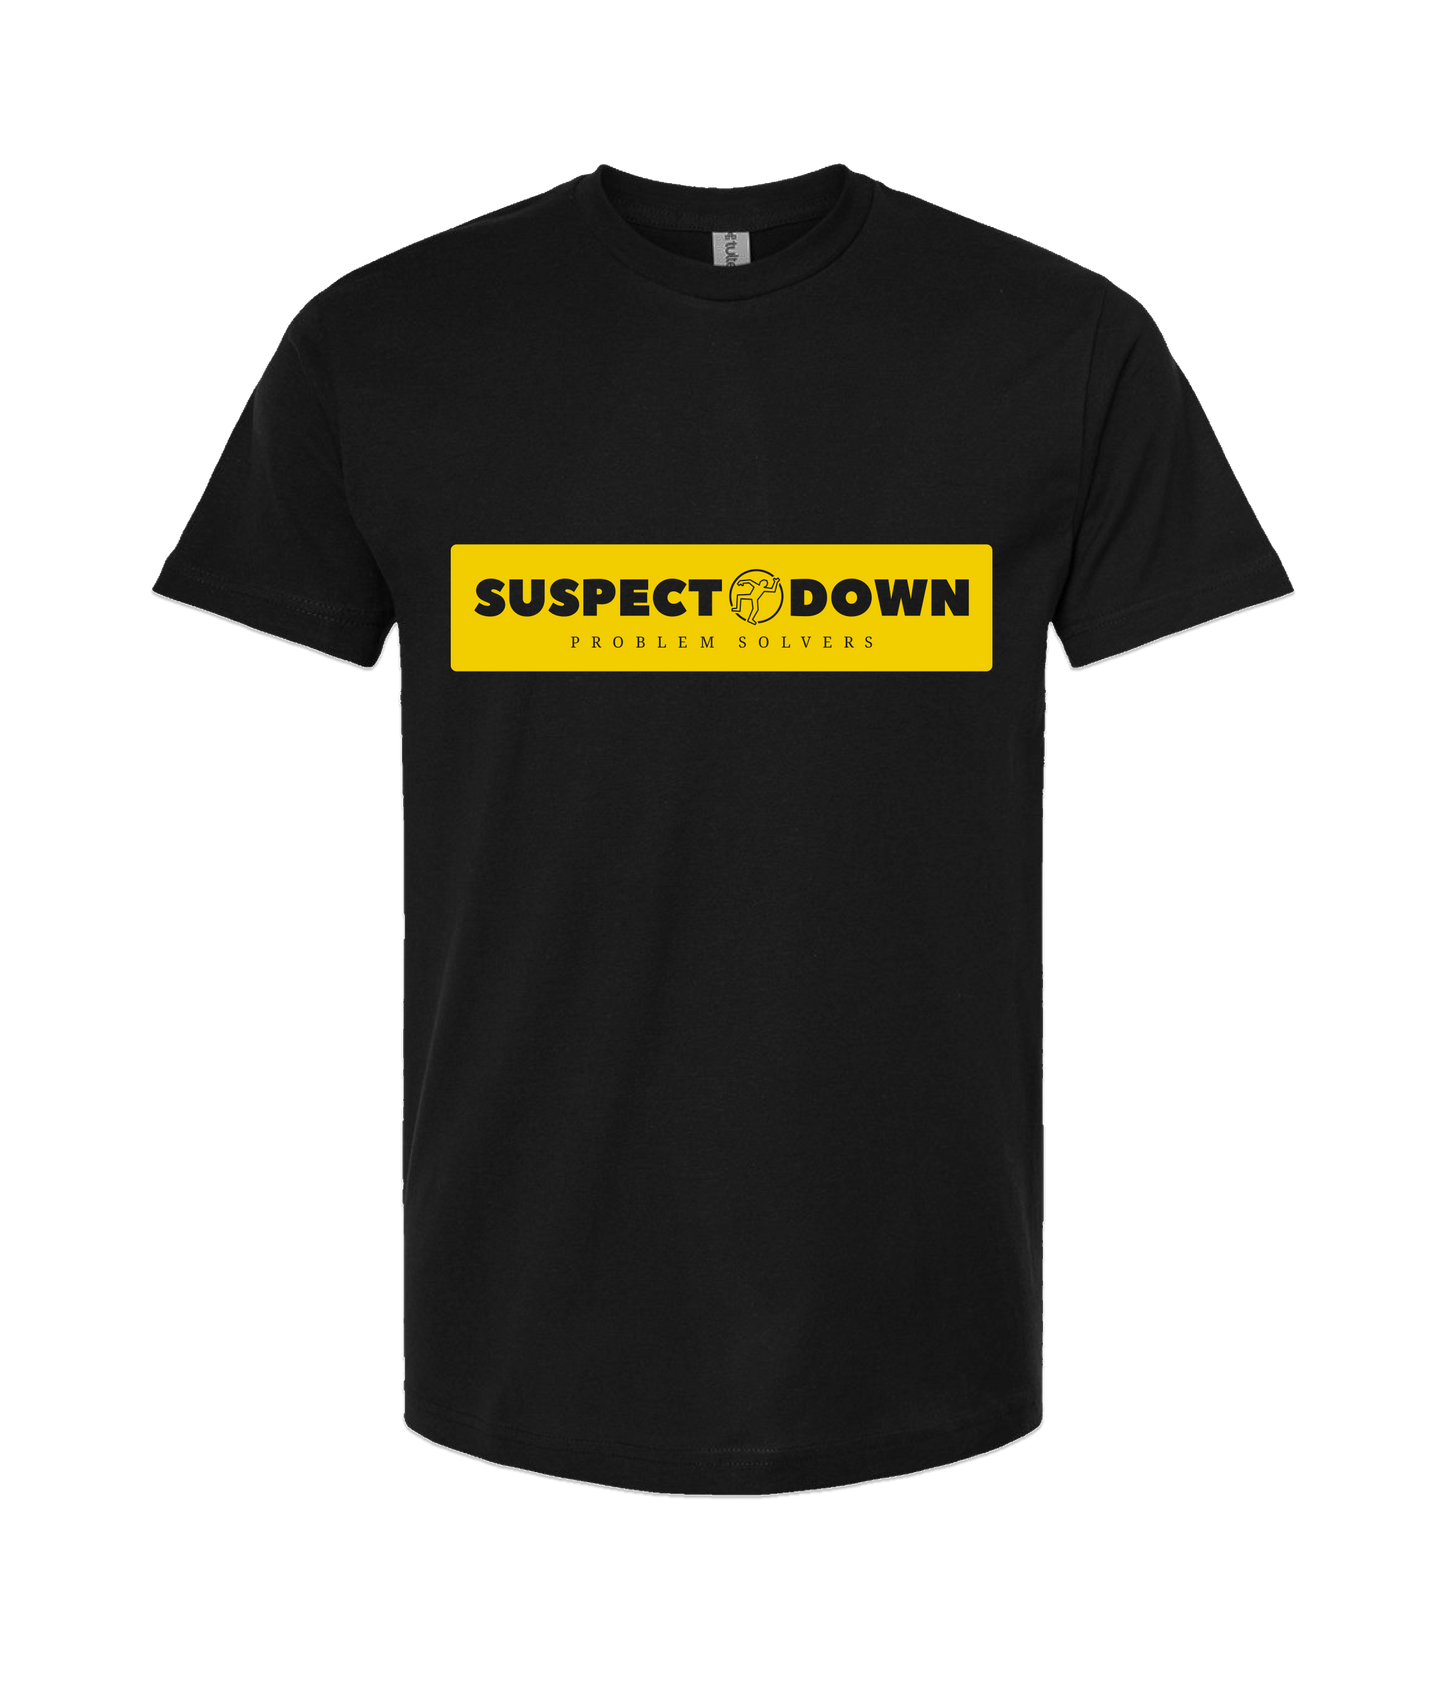 Suspect Down - PROBLEM SOLVERS - Black T-Shirt